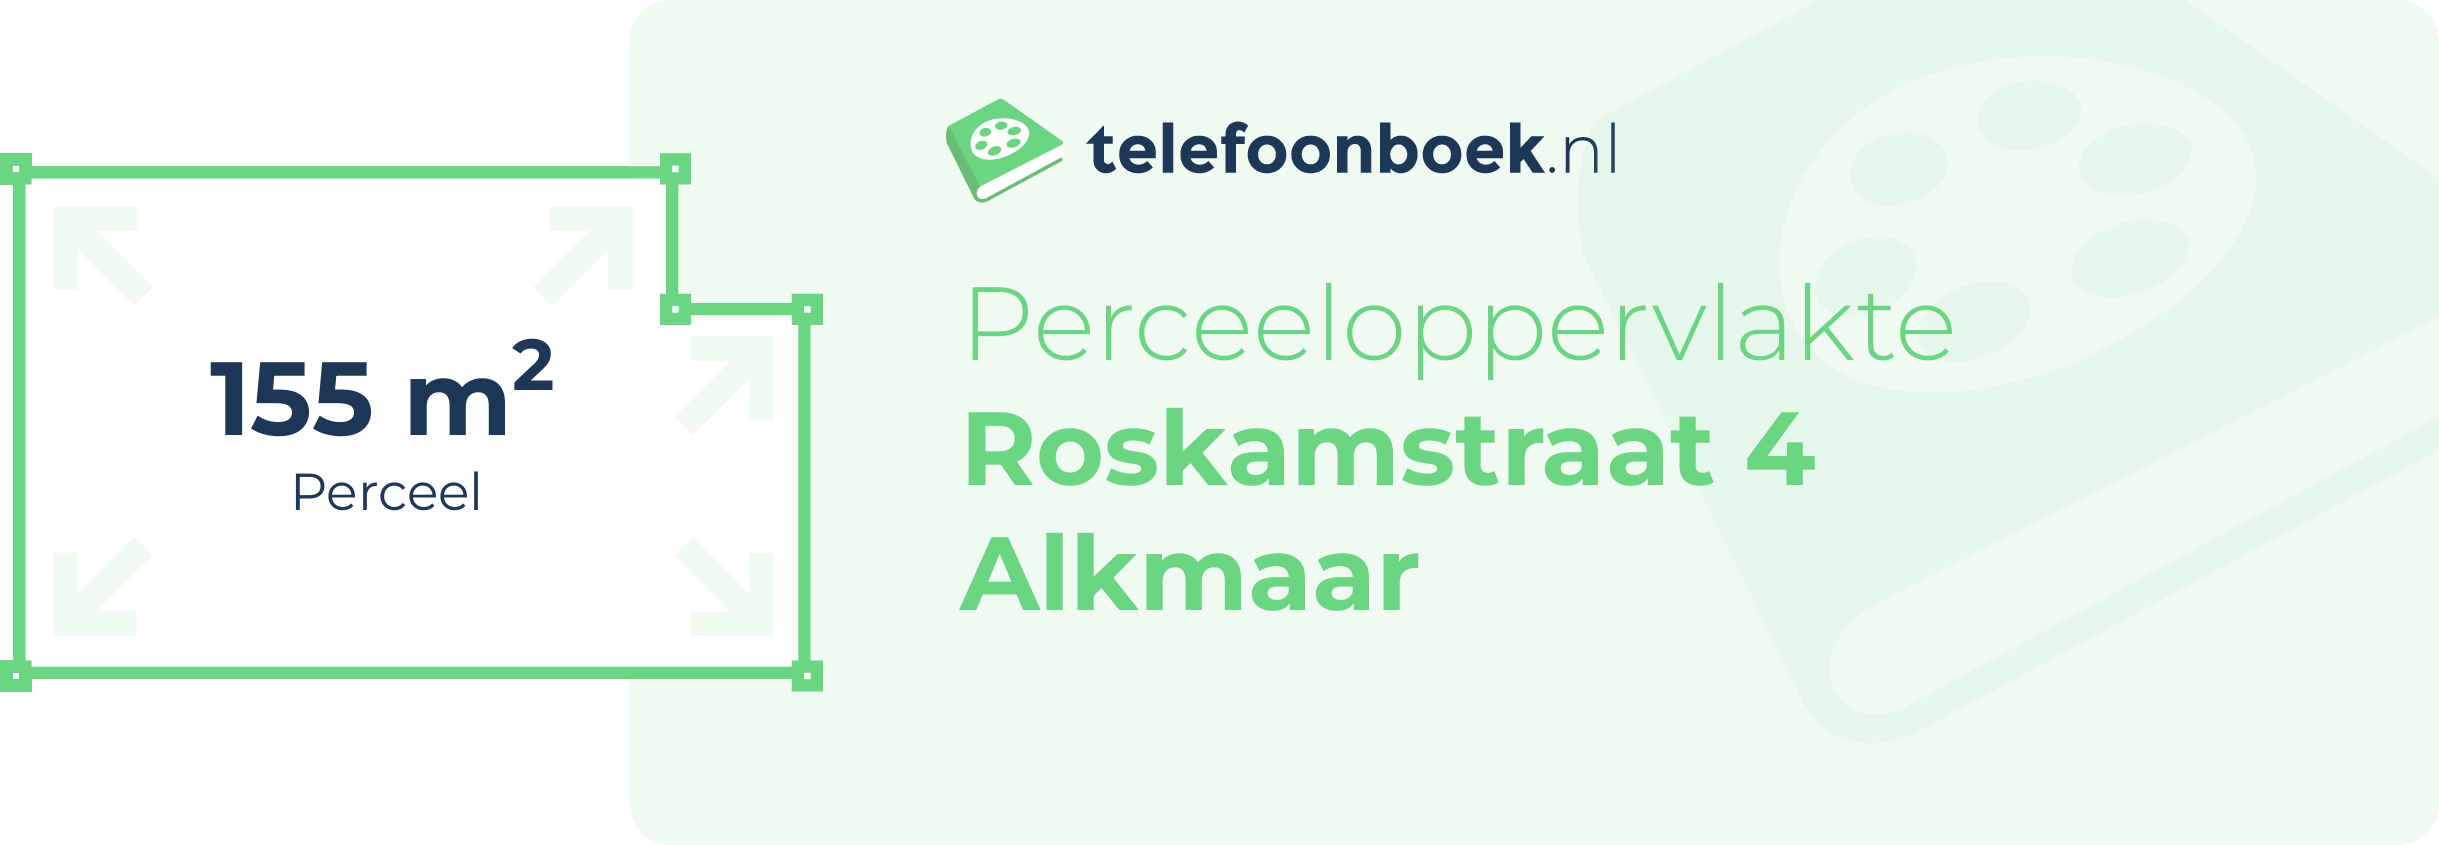 Perceeloppervlakte Roskamstraat 4 Alkmaar